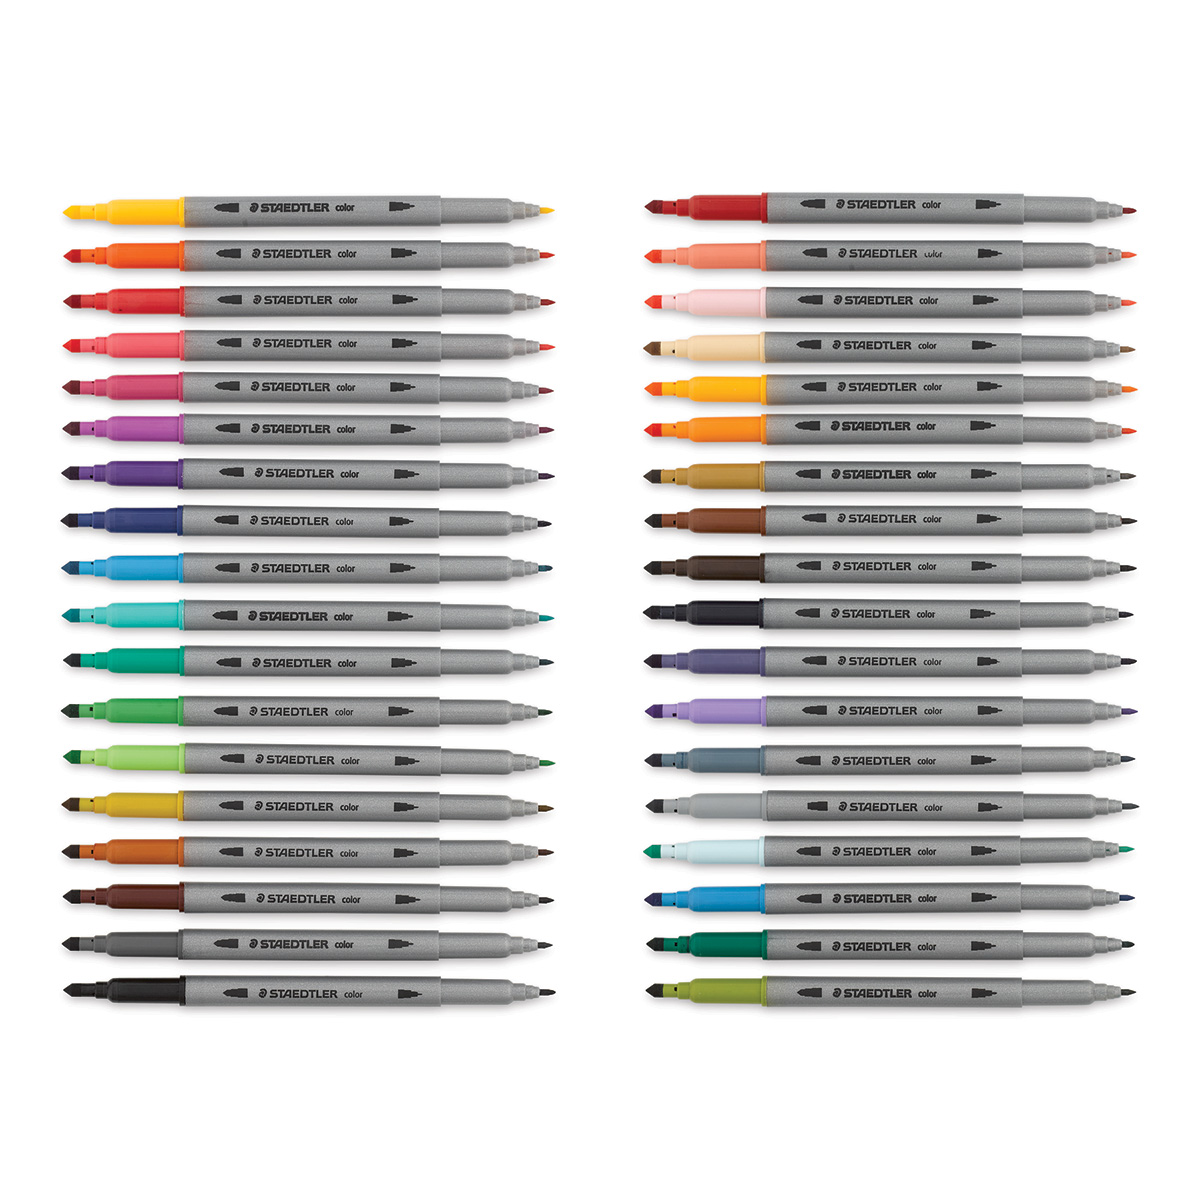 Staedtler Double-Ended Fiber-Tip Pens - Set of 120, BLICK Art Materials